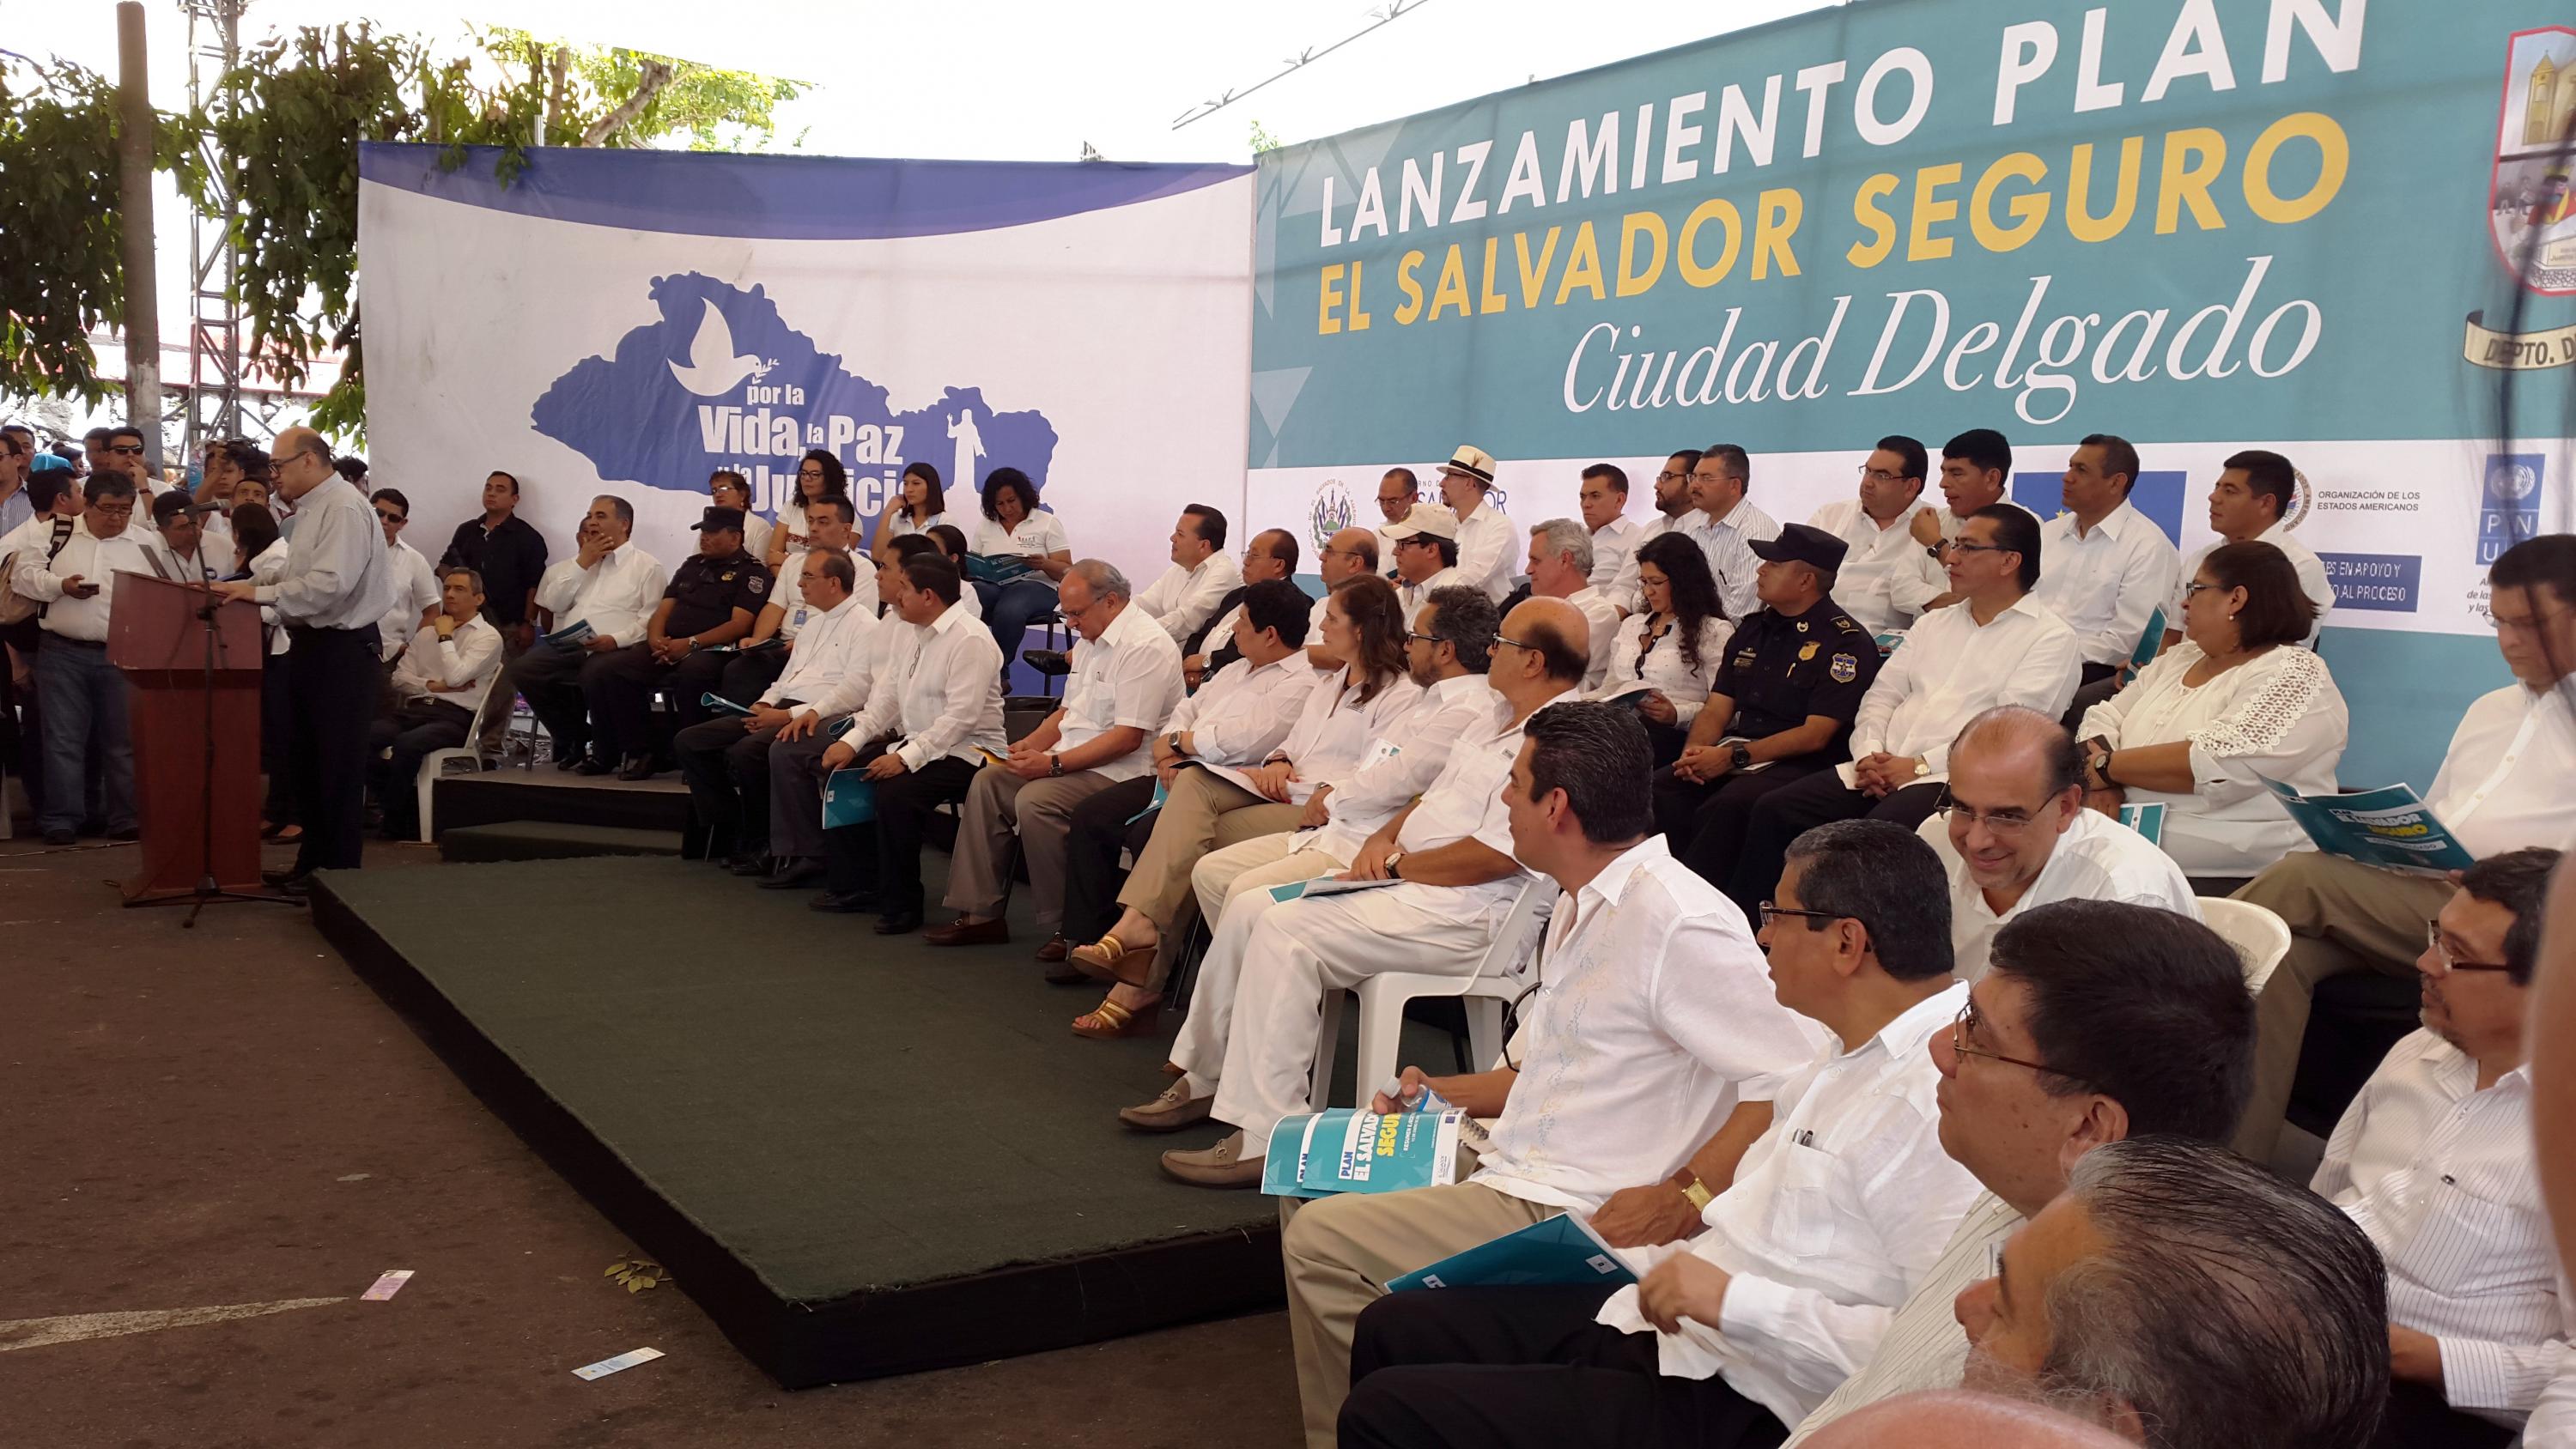 Arnoldo Jiménez, director ejecutivo de la Asociación Nacional de la Empresa Privada, leyó un comunicado del Consejo de Seguridad, durante el lanzamiento del plan El Salvador Seguro, en Ciudad Delgado, el 16 de julio de 2015. (Foto El Faro/ Nelson Rauda).